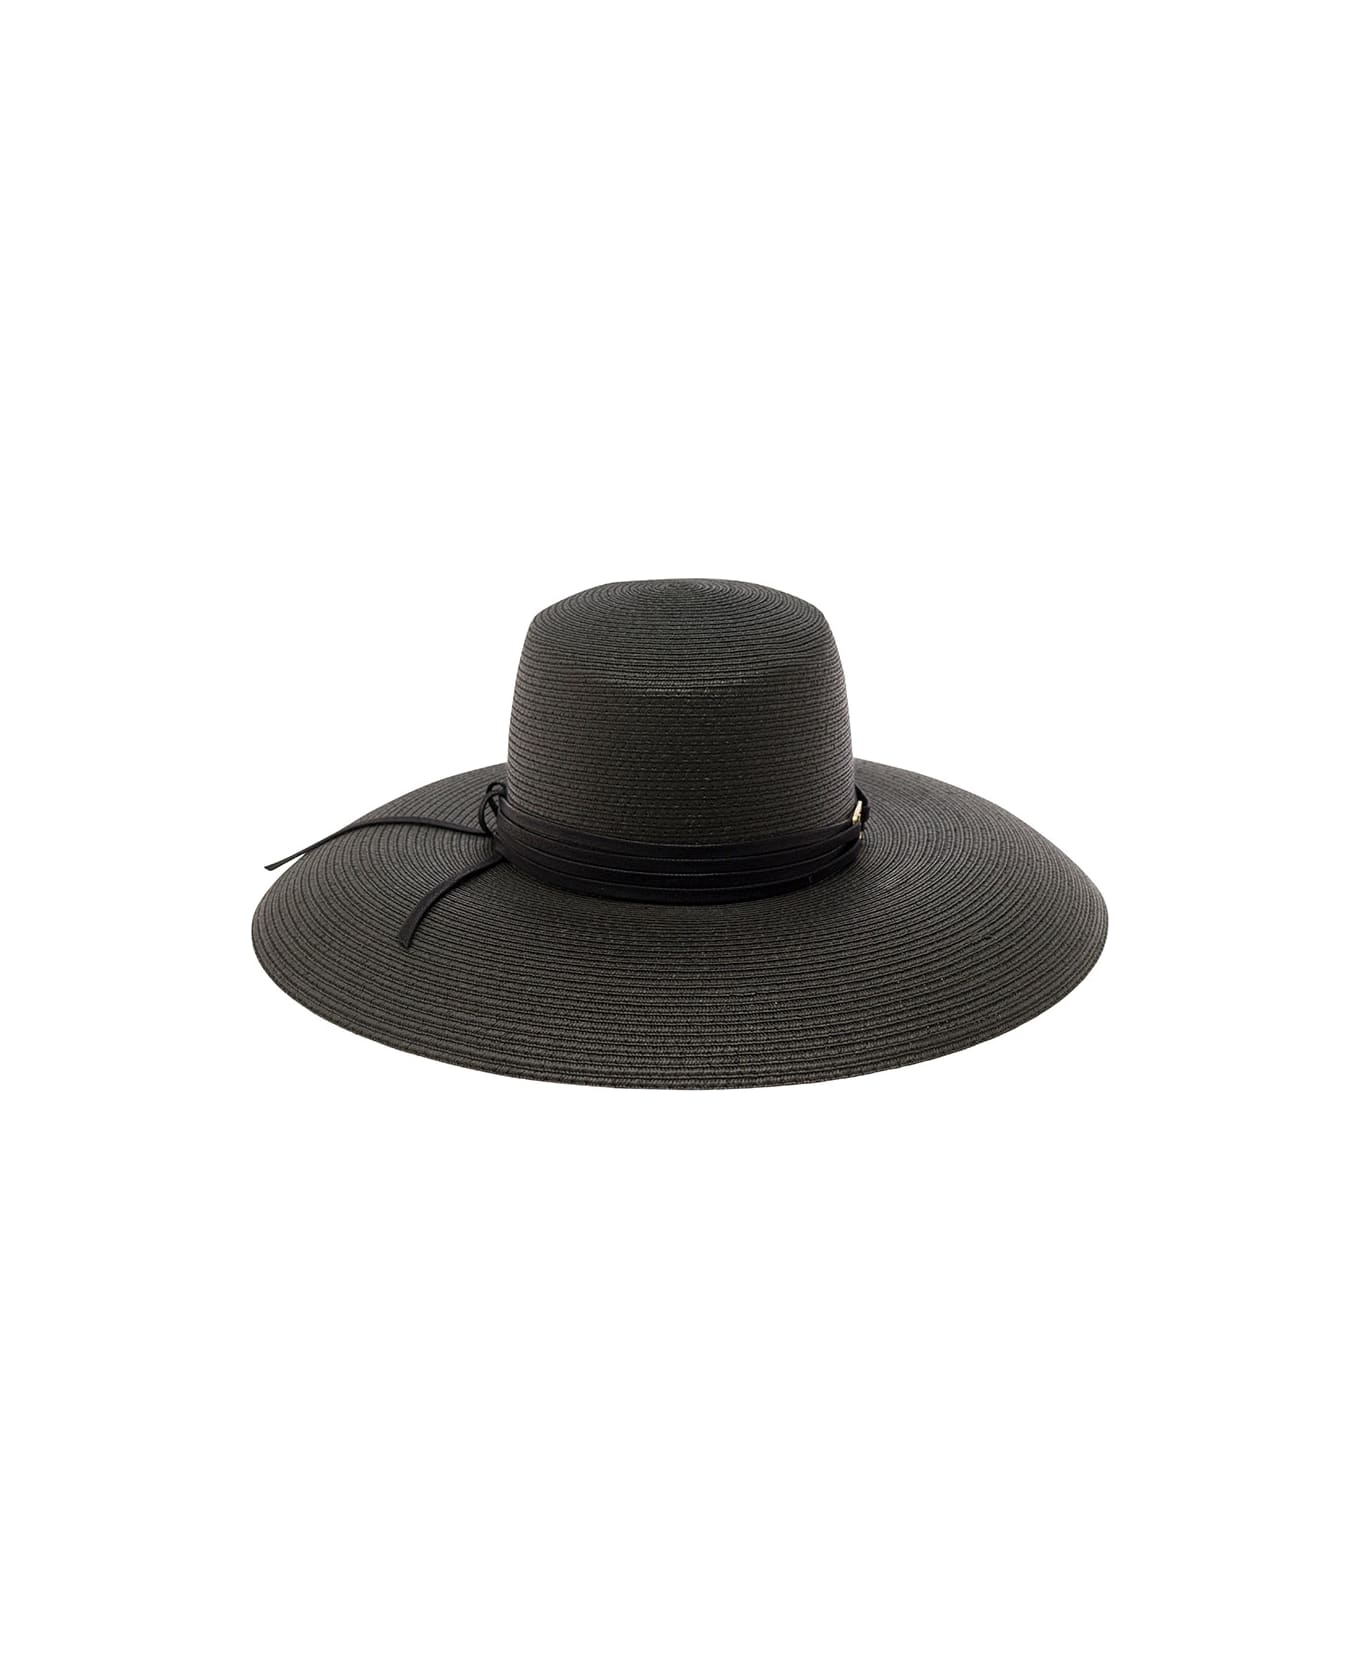 Alberta Ferretti Black Wide Hat In Straw Woman - Black 帽子